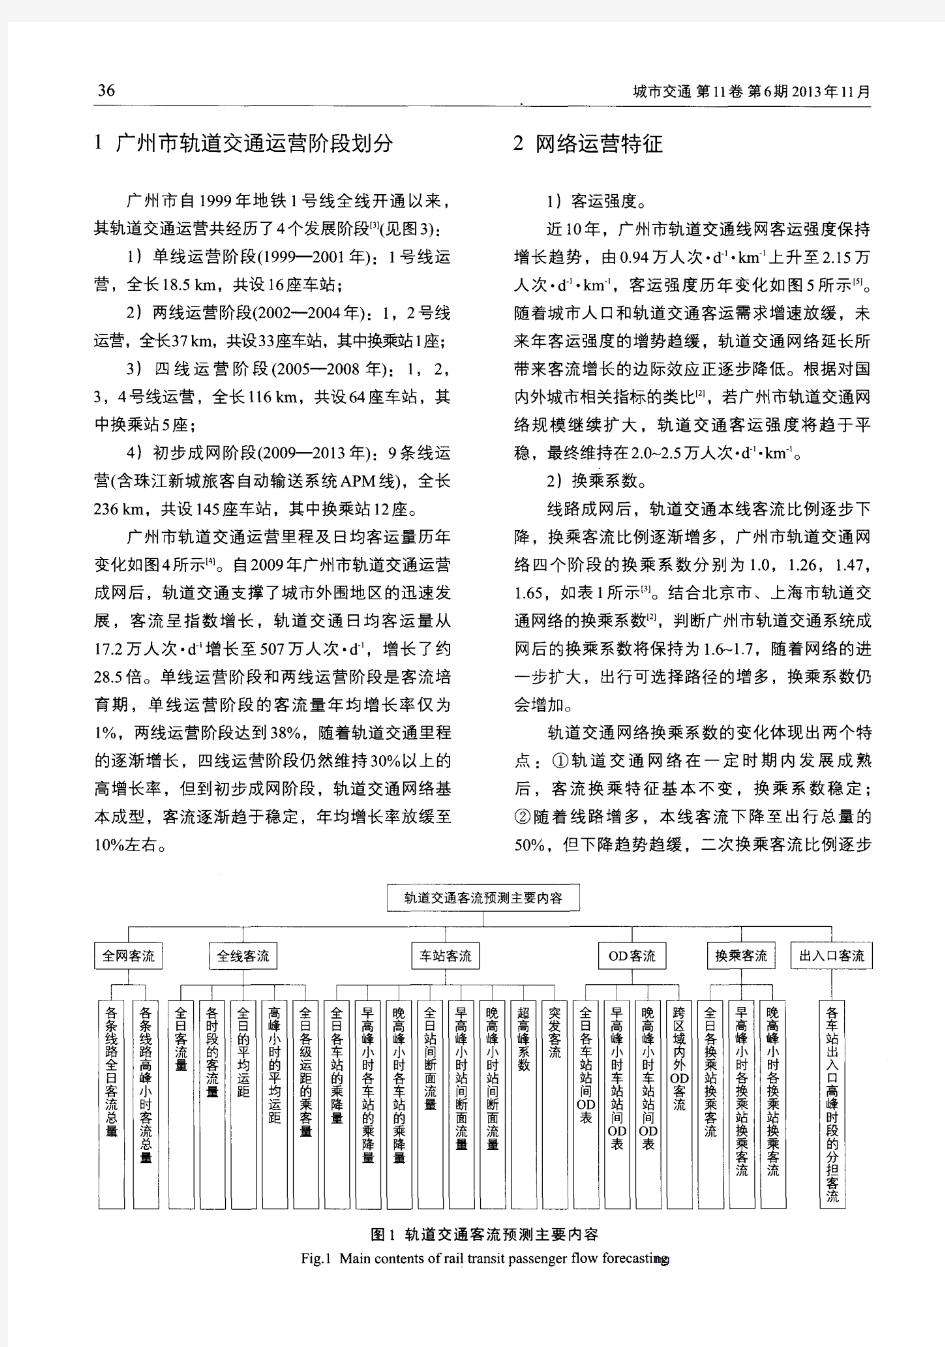 广州市轨道交通客流特征分析